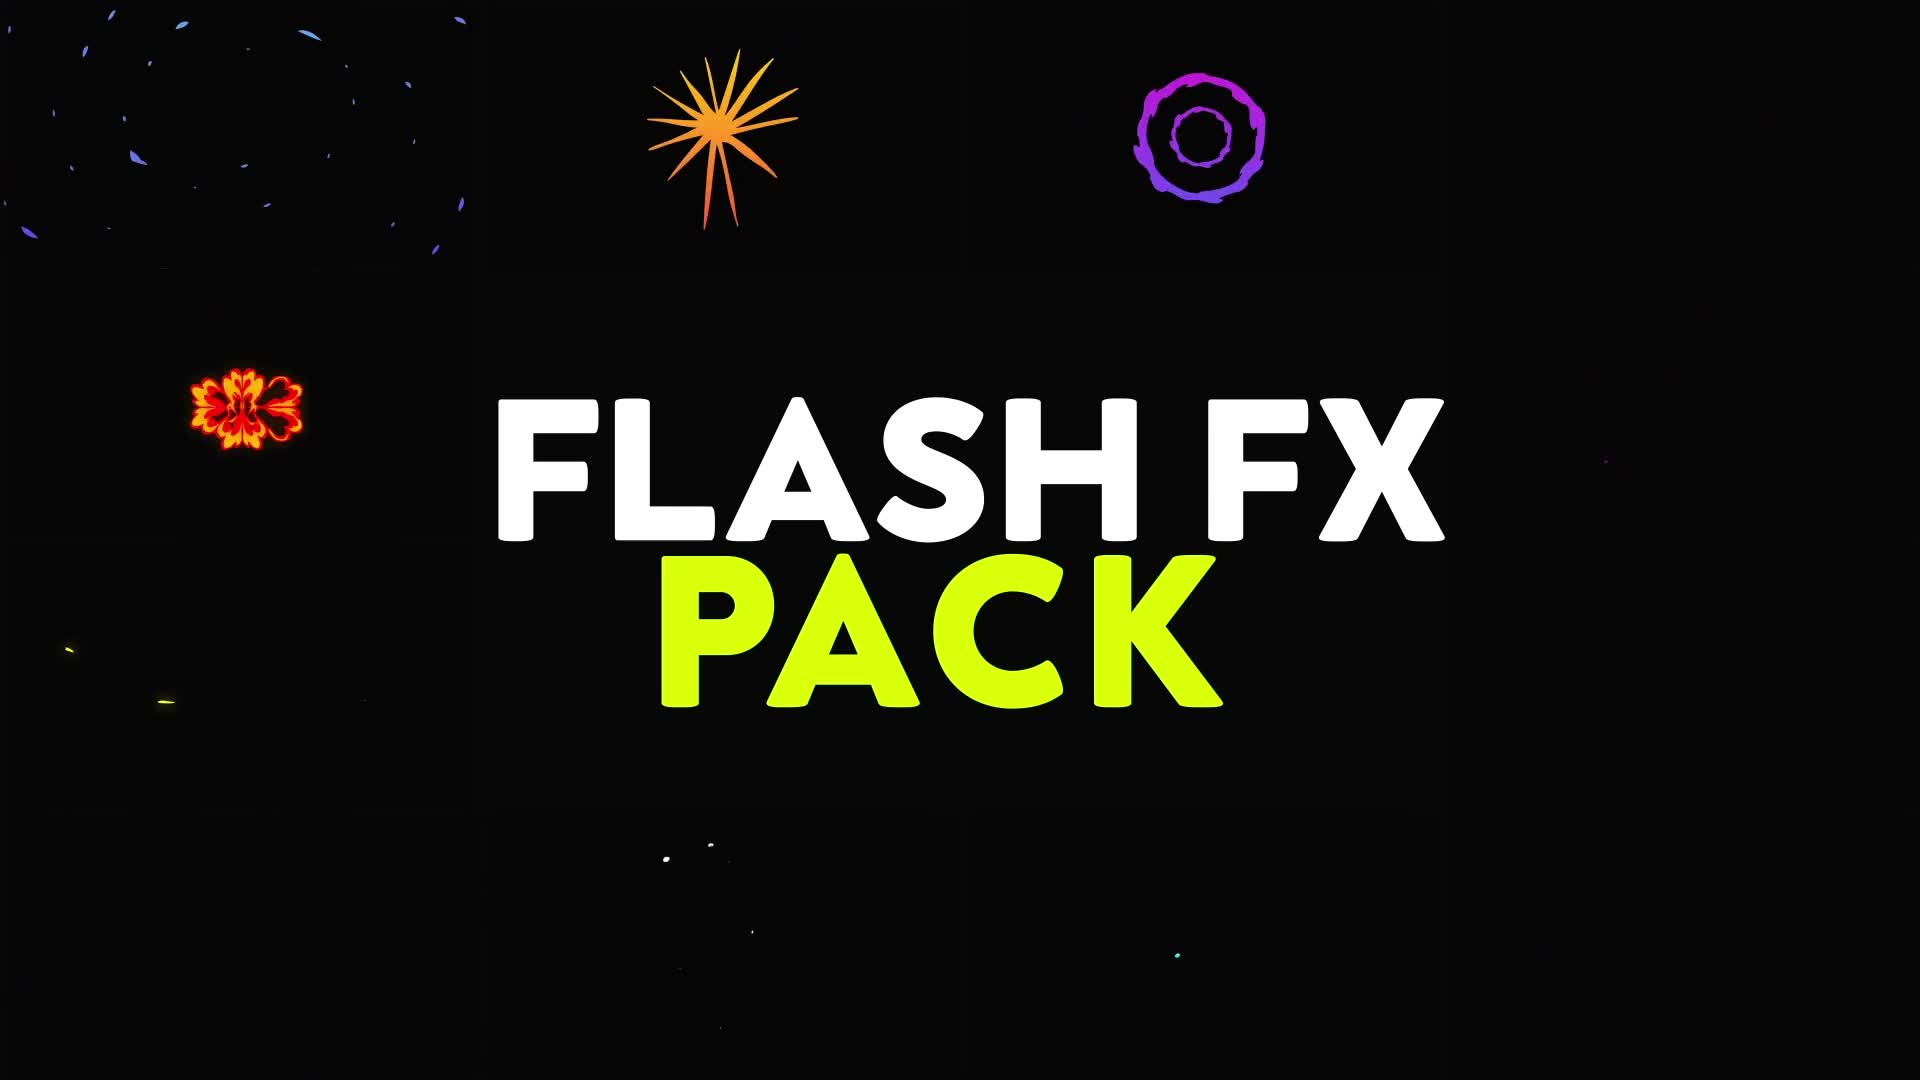 Flash FX Pack | Premiere Pro MOGRT Videohive 31542506 Premiere Pro Image 2